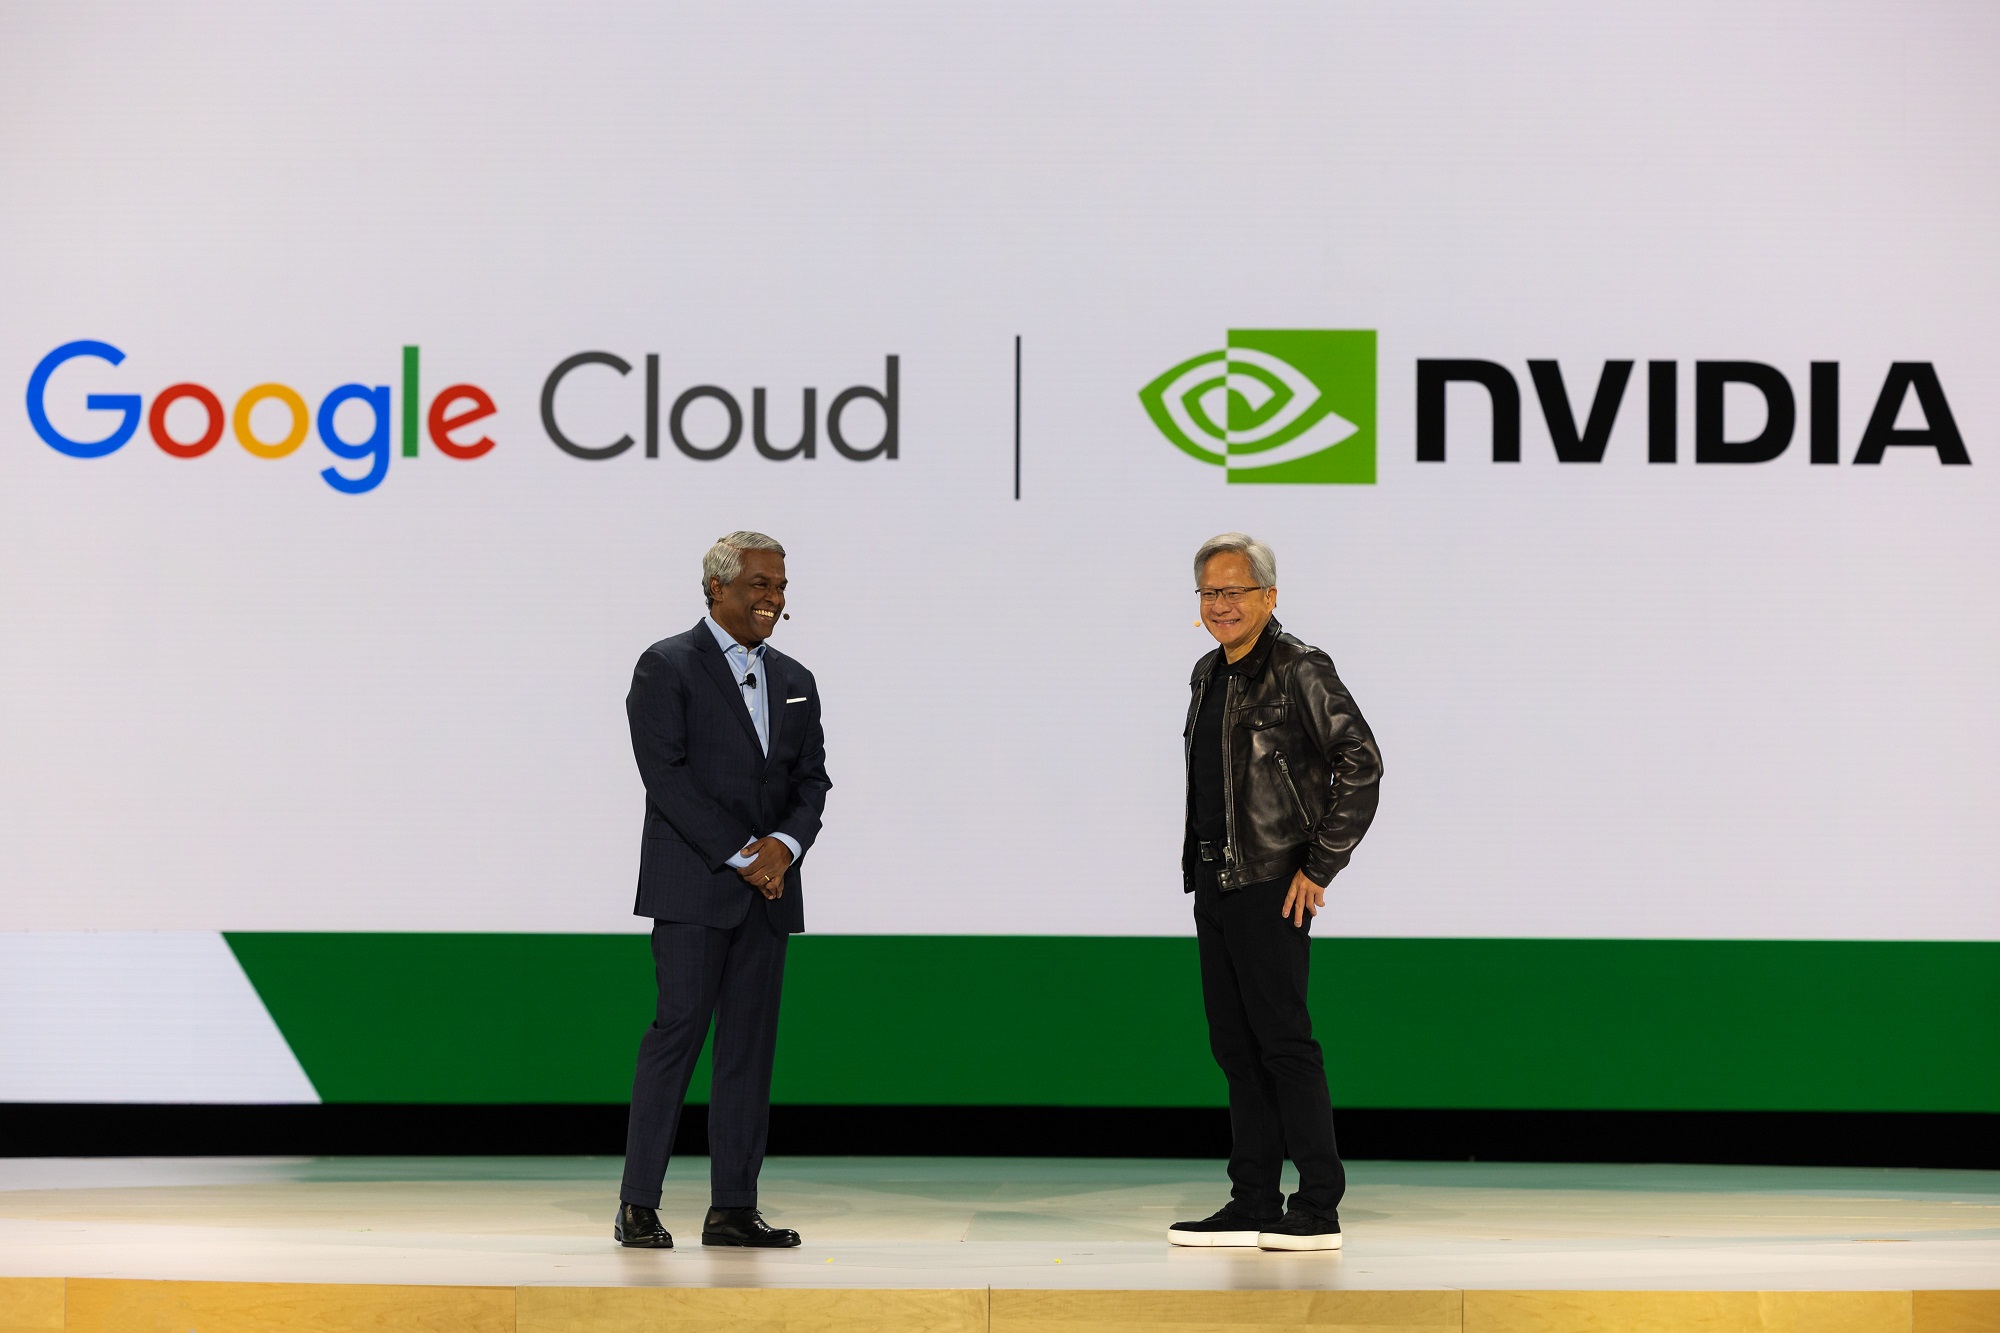 google cloud Thomas Kurian and nvidia Jensen Huang onstage at Google Cloud Next